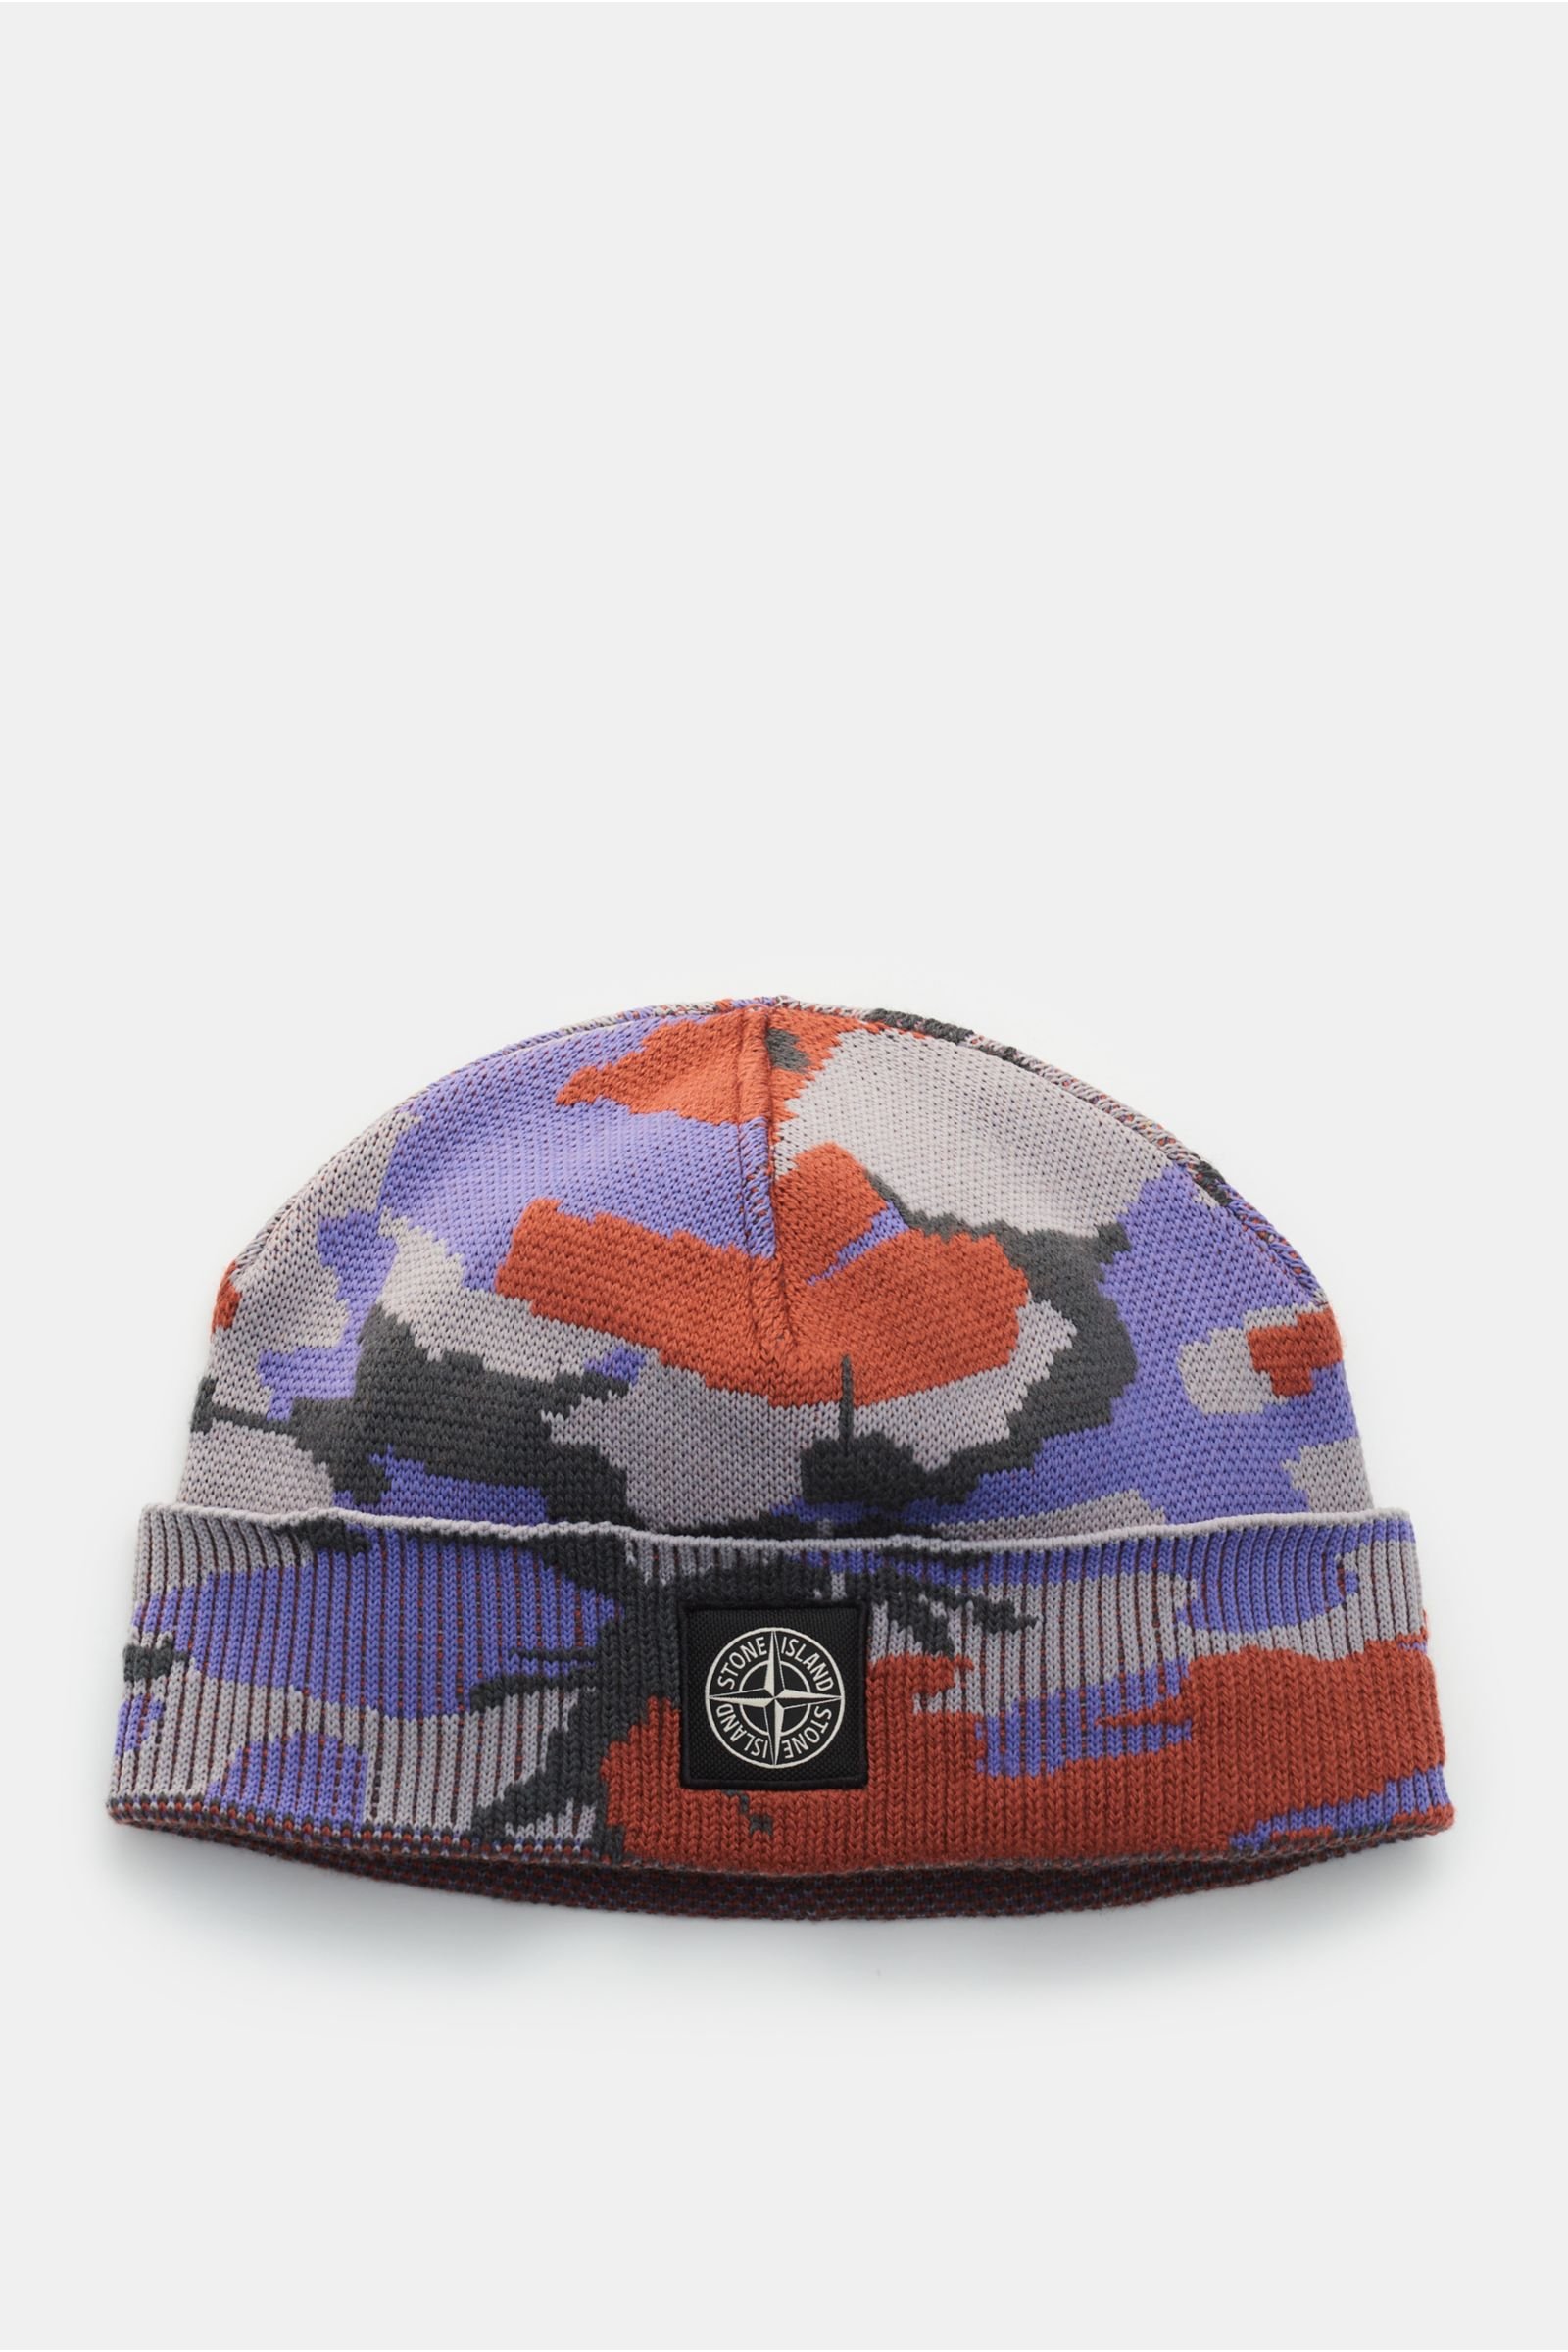 Mütze hellgrau/rostbraun/violett gemustert